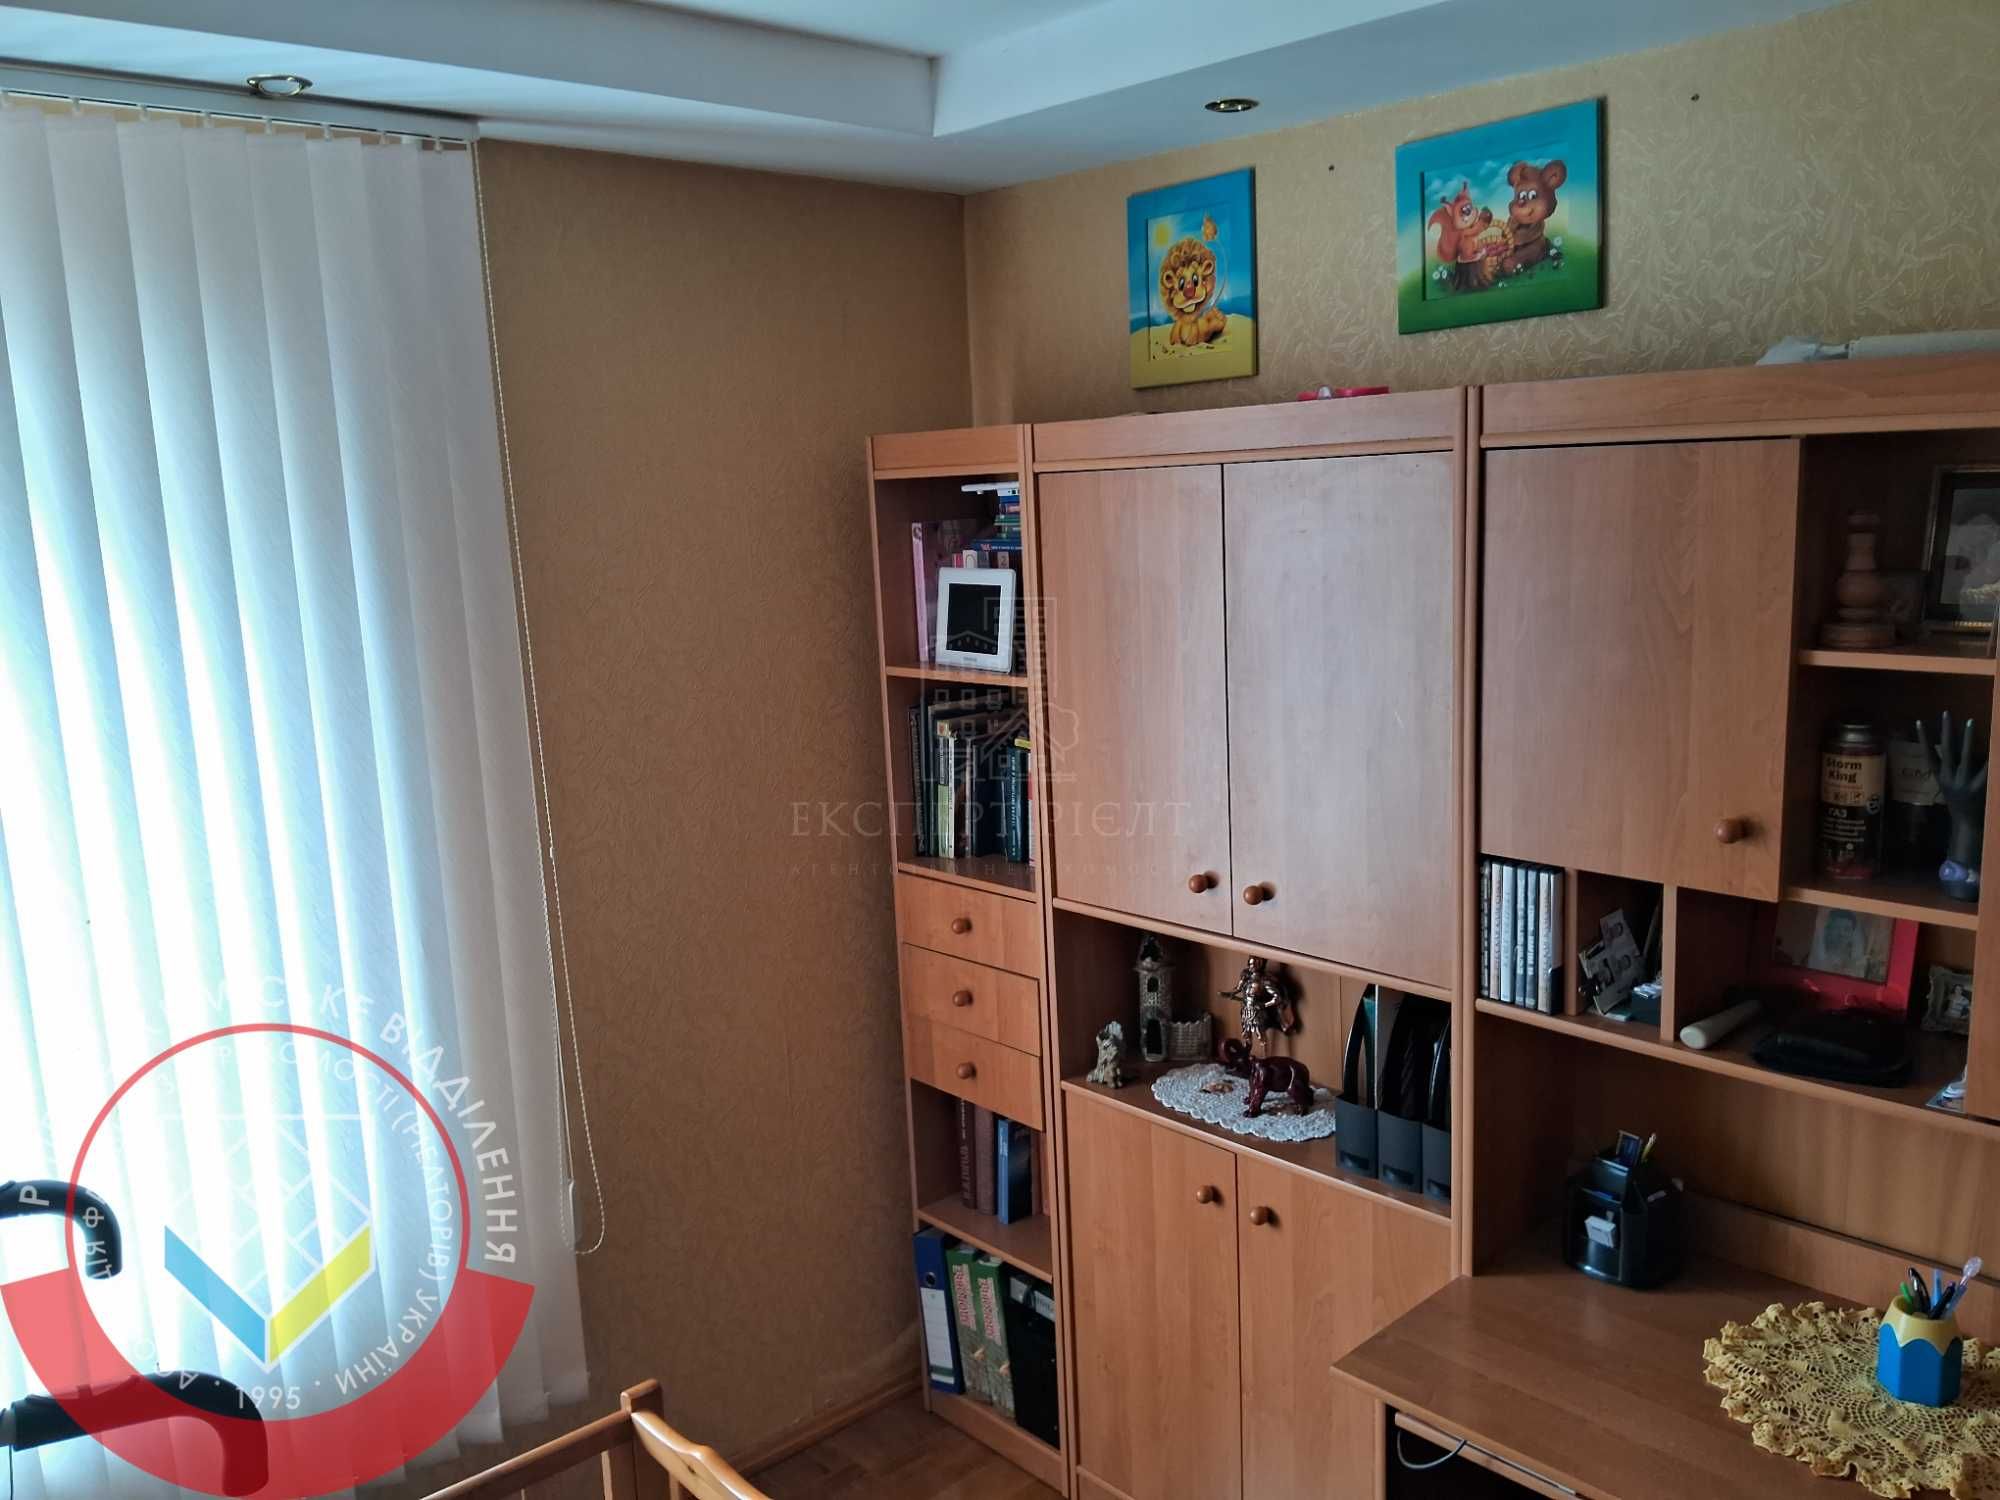 RLT T01 Продам 3 кімнатну квартиру, кухня студія, пр. Миру, Ремзавод